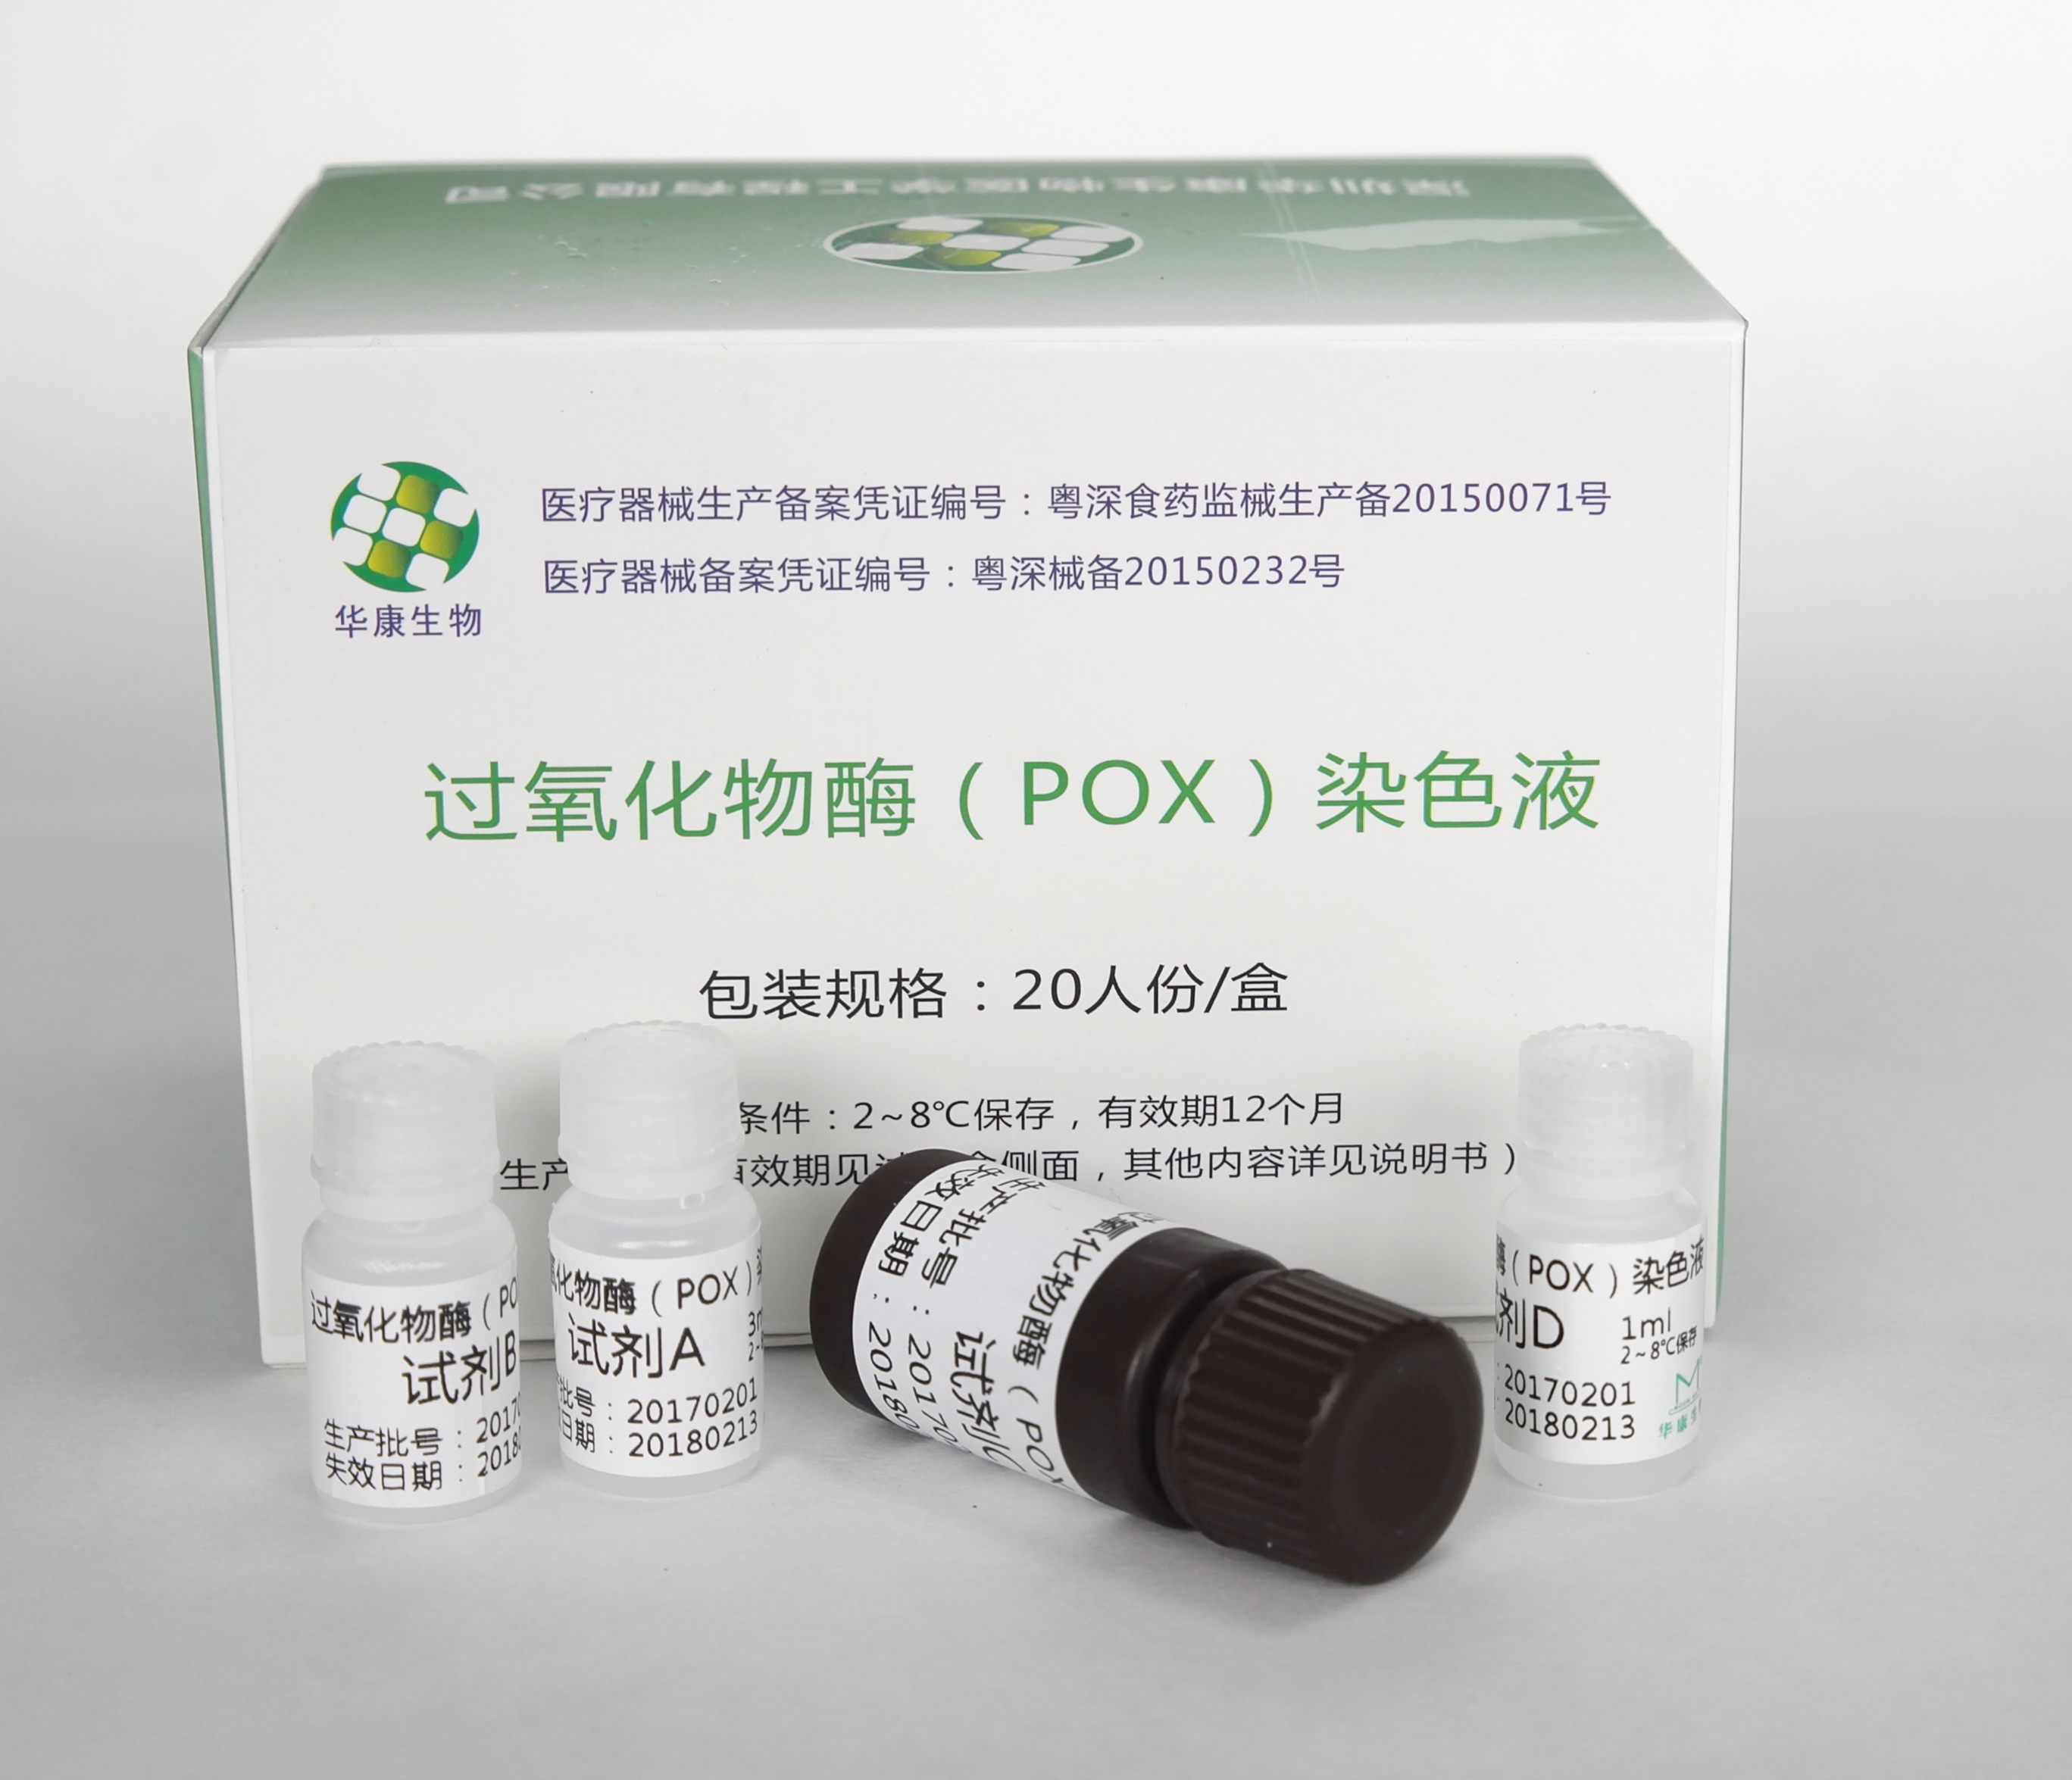 【华康】过氧化物酶(POX)染色液 Peroxidase Staining-云医购